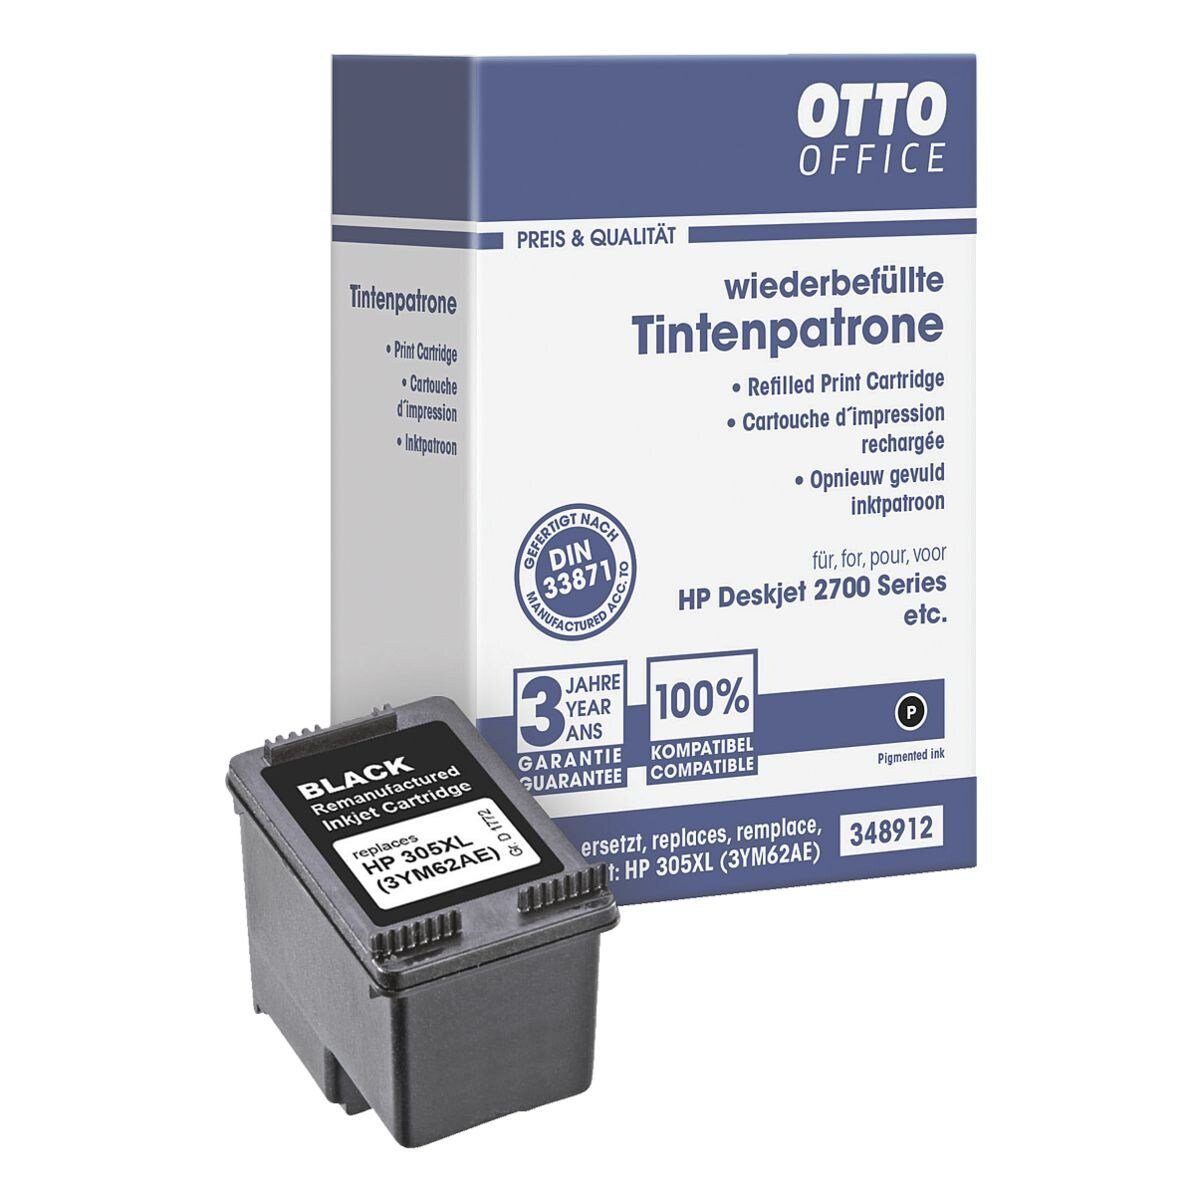 Otto Office  Office 3YM62AE Tintenpatrone (ersetzt HP 305 XL (3YM62AE), schwarz)